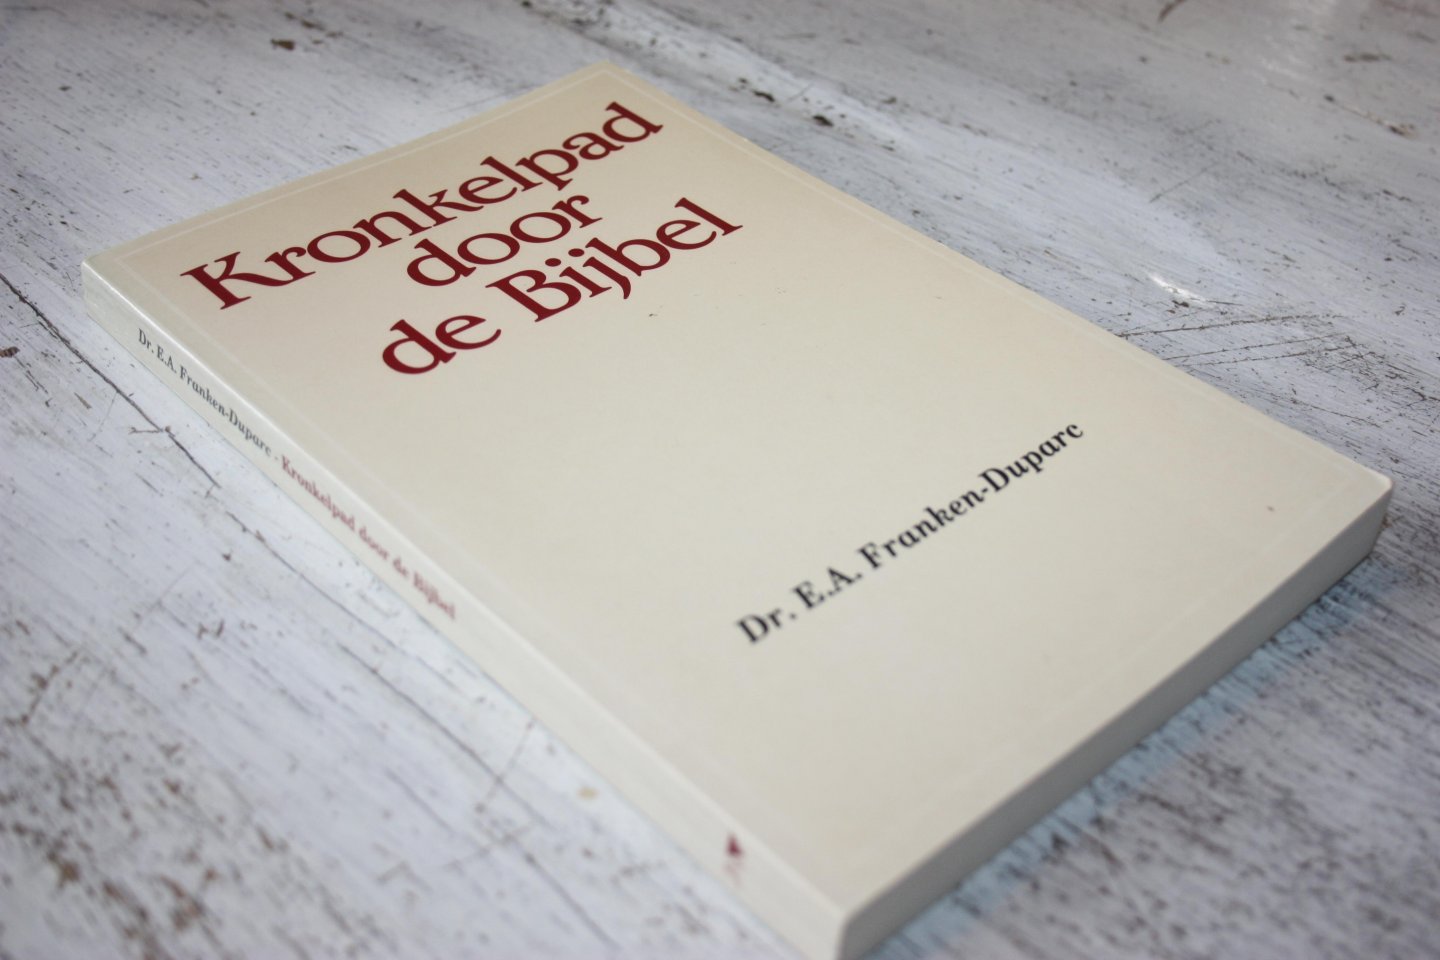 Franken Duparc, Dr. E.A. - KRONKELPAD DOOR DE BIJBEL